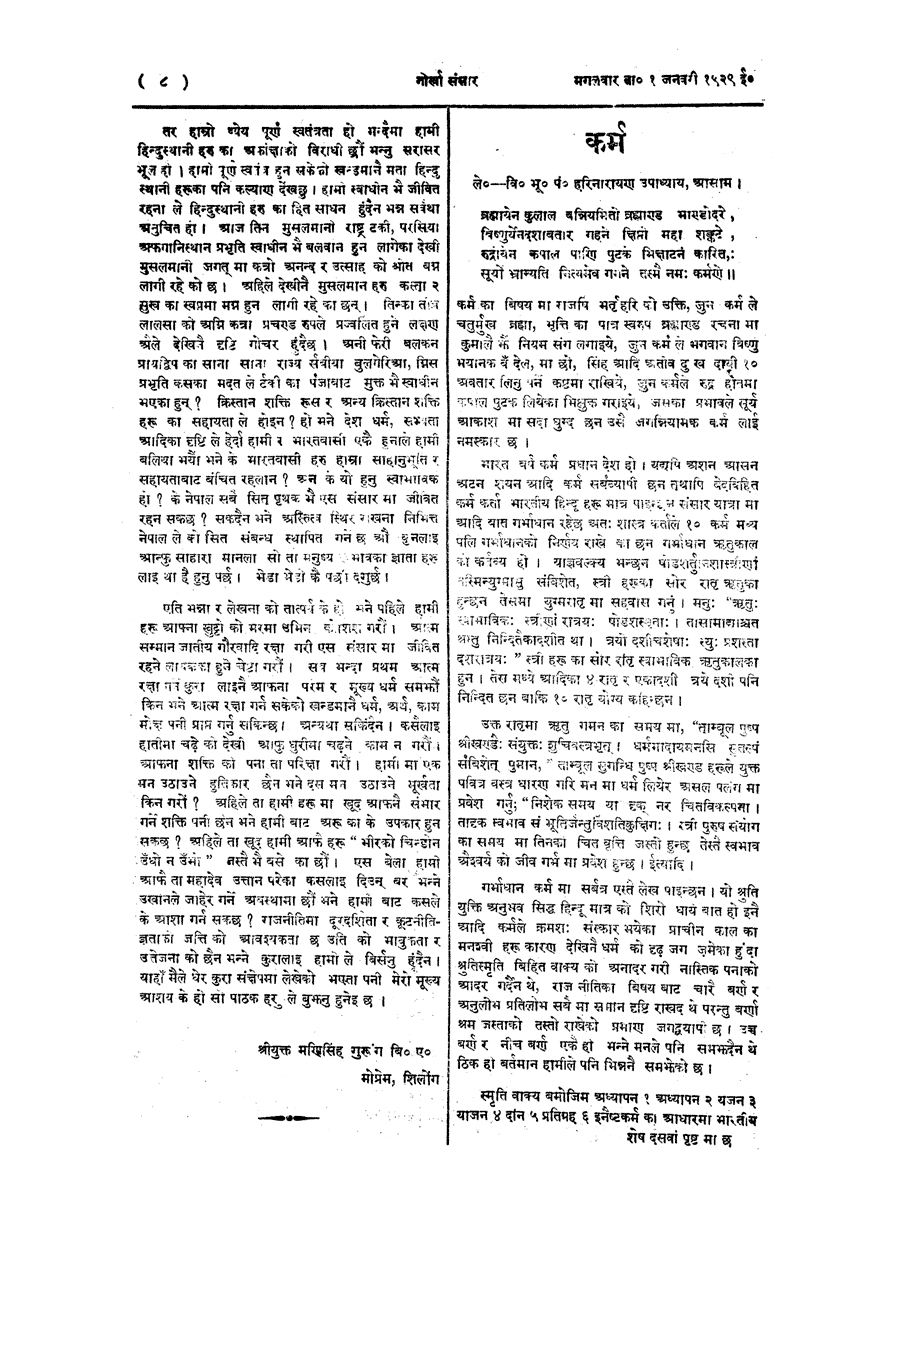 Gorkha Sansar, 1 Jan 1929, page 8